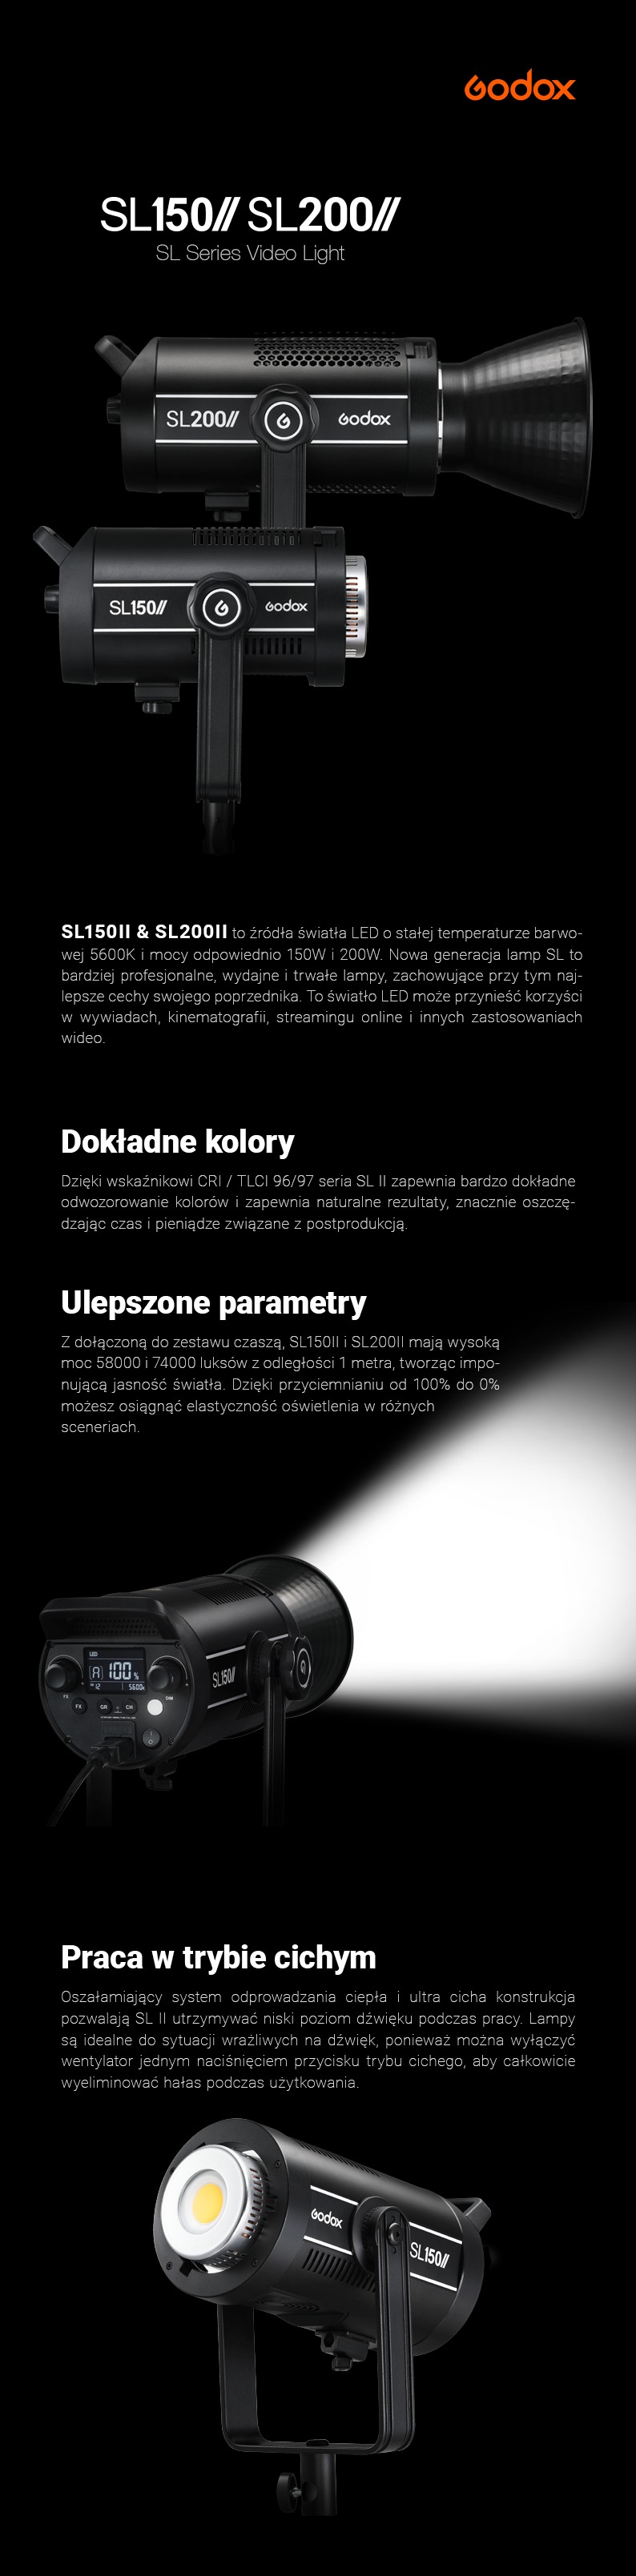 Godox Lampy LED serii SL150II/SL200II Stała temperatura barwowa 5600K i wysoka moc 150W i 200W. Dokładne odwzorowanie kolorów CRI i TLCI 96\97. Ulepszone parametry. Możliwość pracy w trybie cichym.